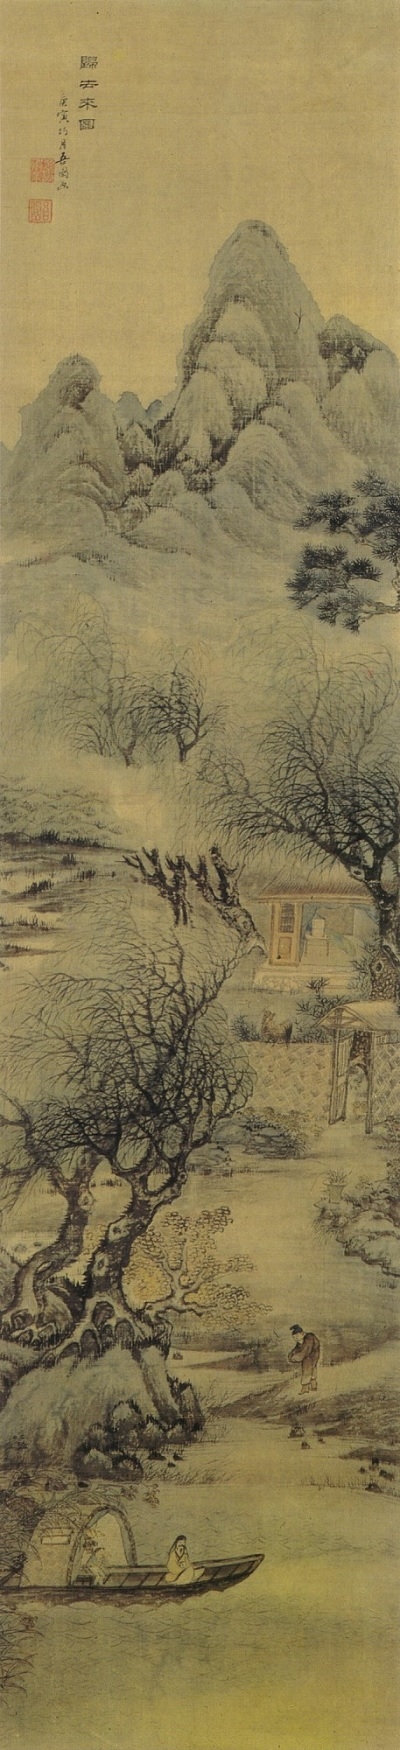 전기 ‘귀거래도(歸去來圖)’, 19세기, 종이에 수묵담채, 삼성미술관 리움